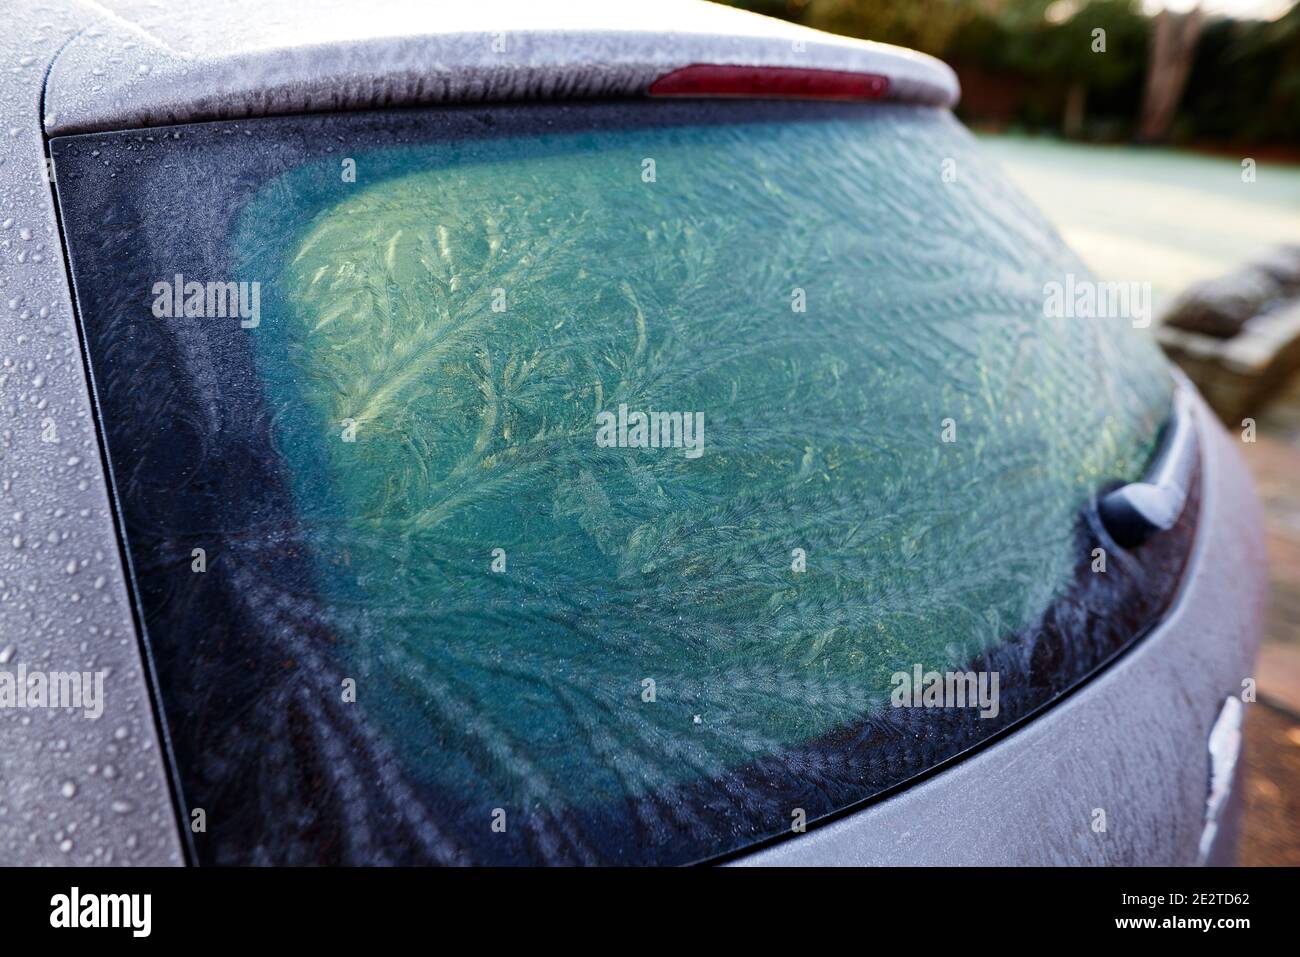 Fahrzeugscheiben hinten gefroren Stockfoto